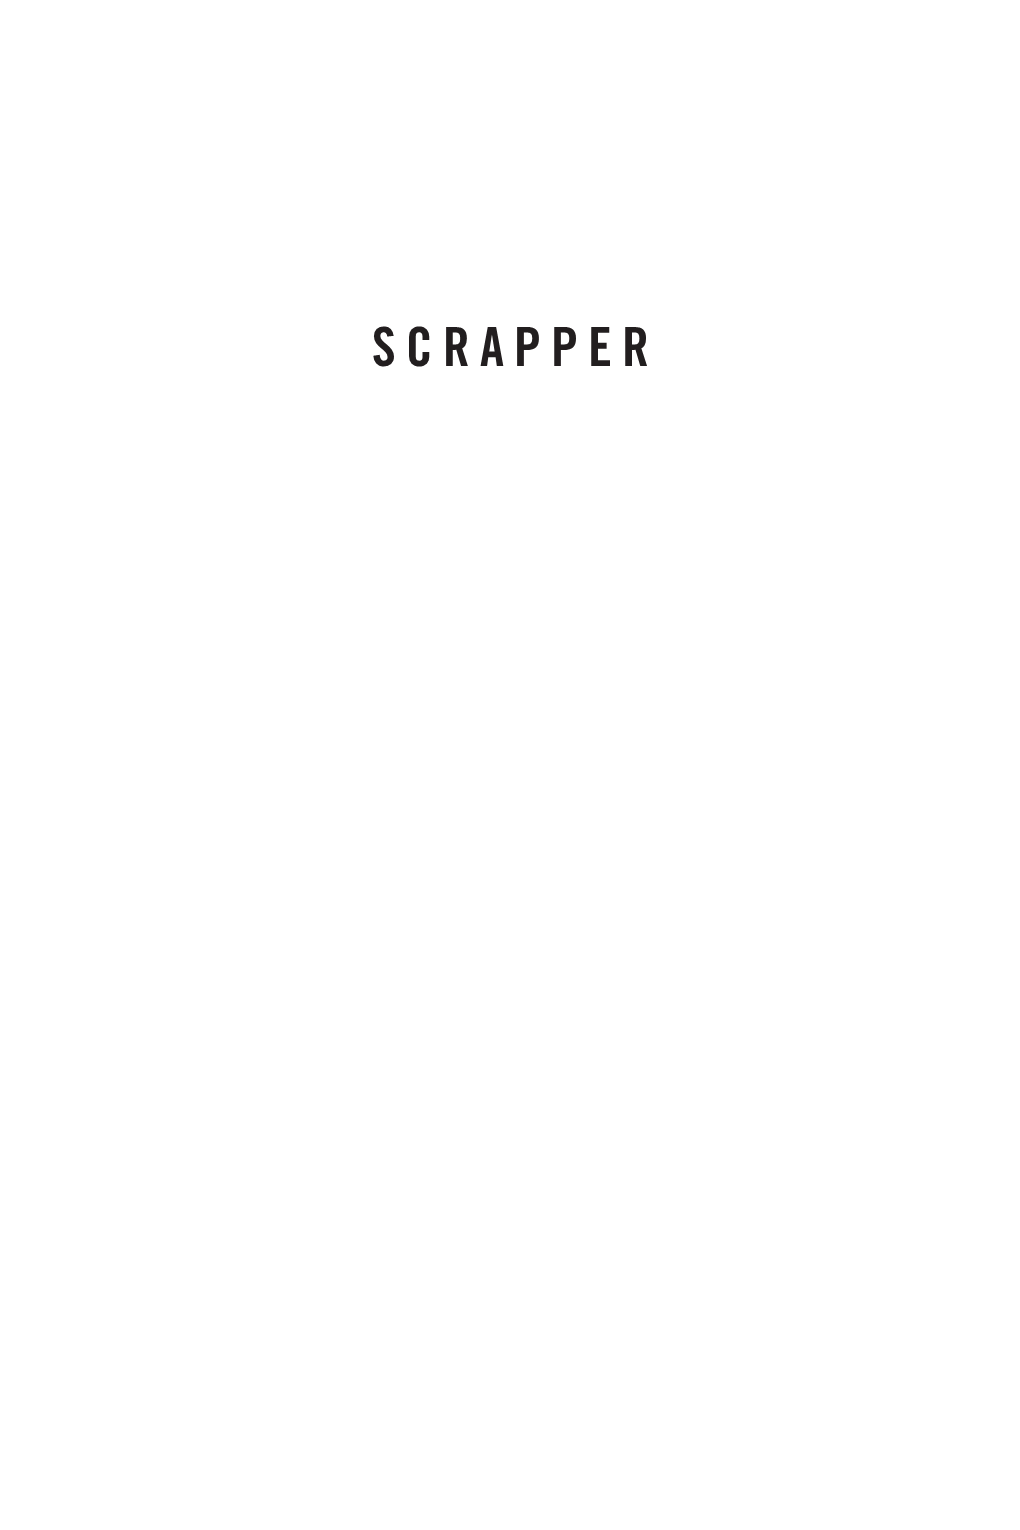 Scrapper / Matt Bell